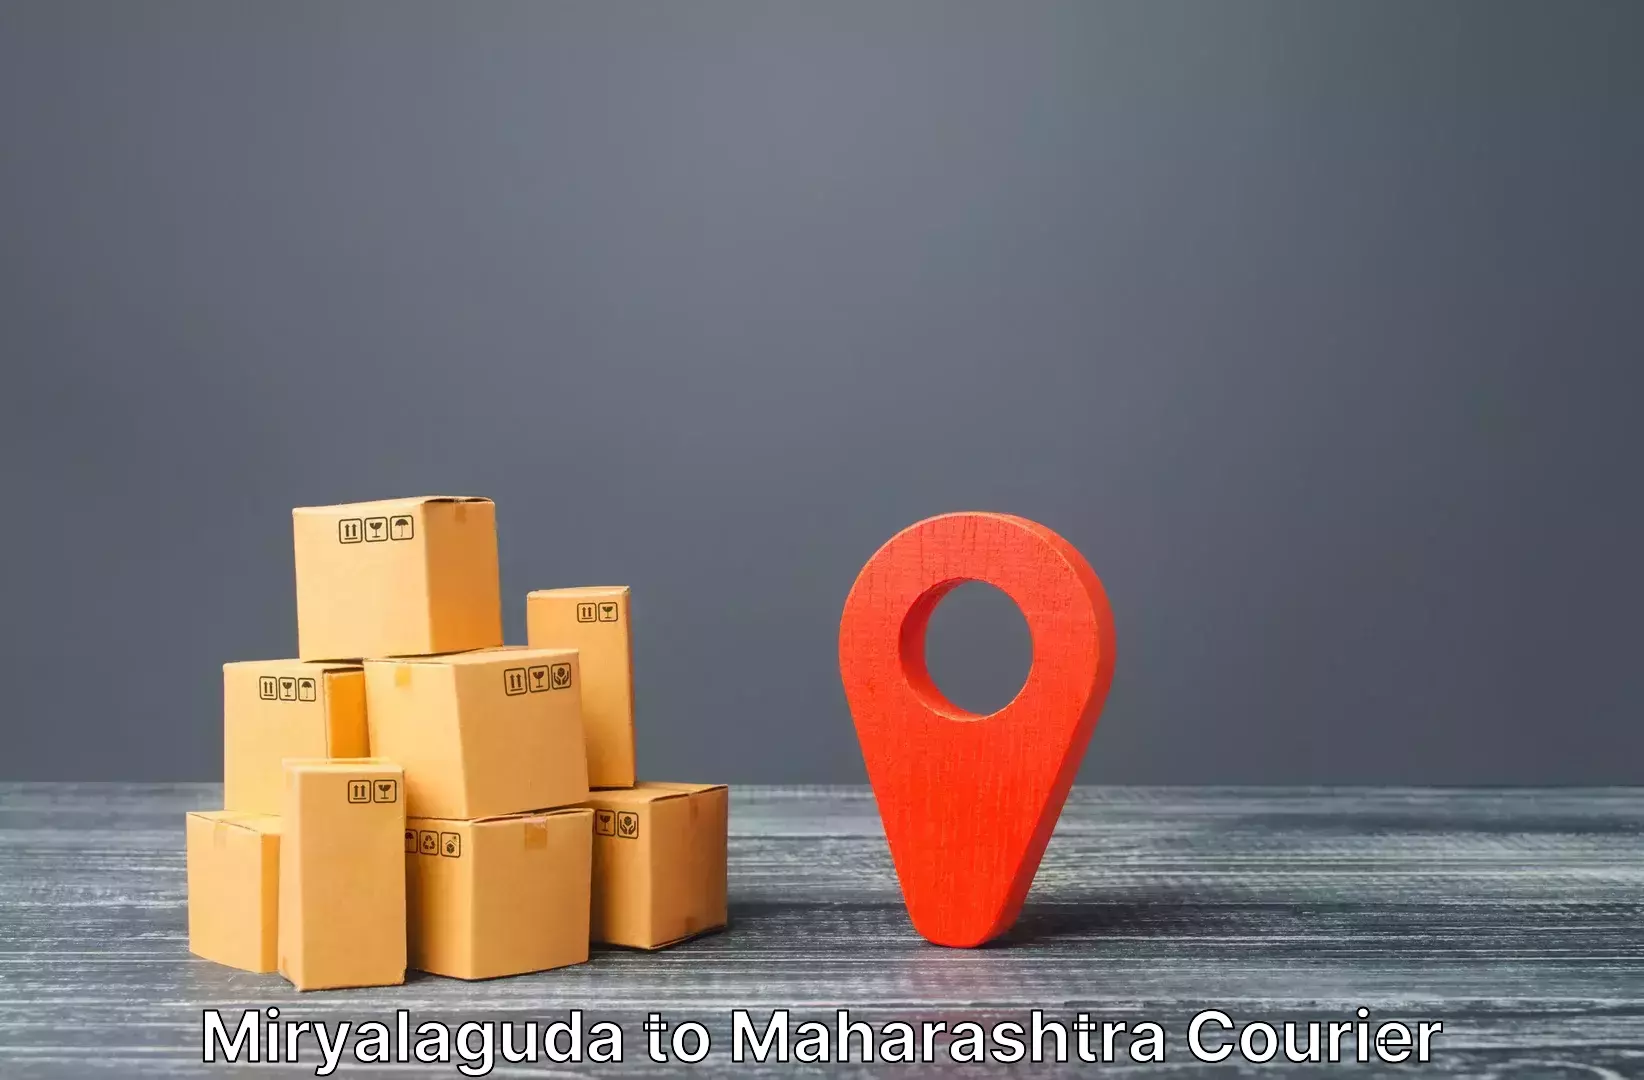 Luggage courier network Miryalaguda to Pune